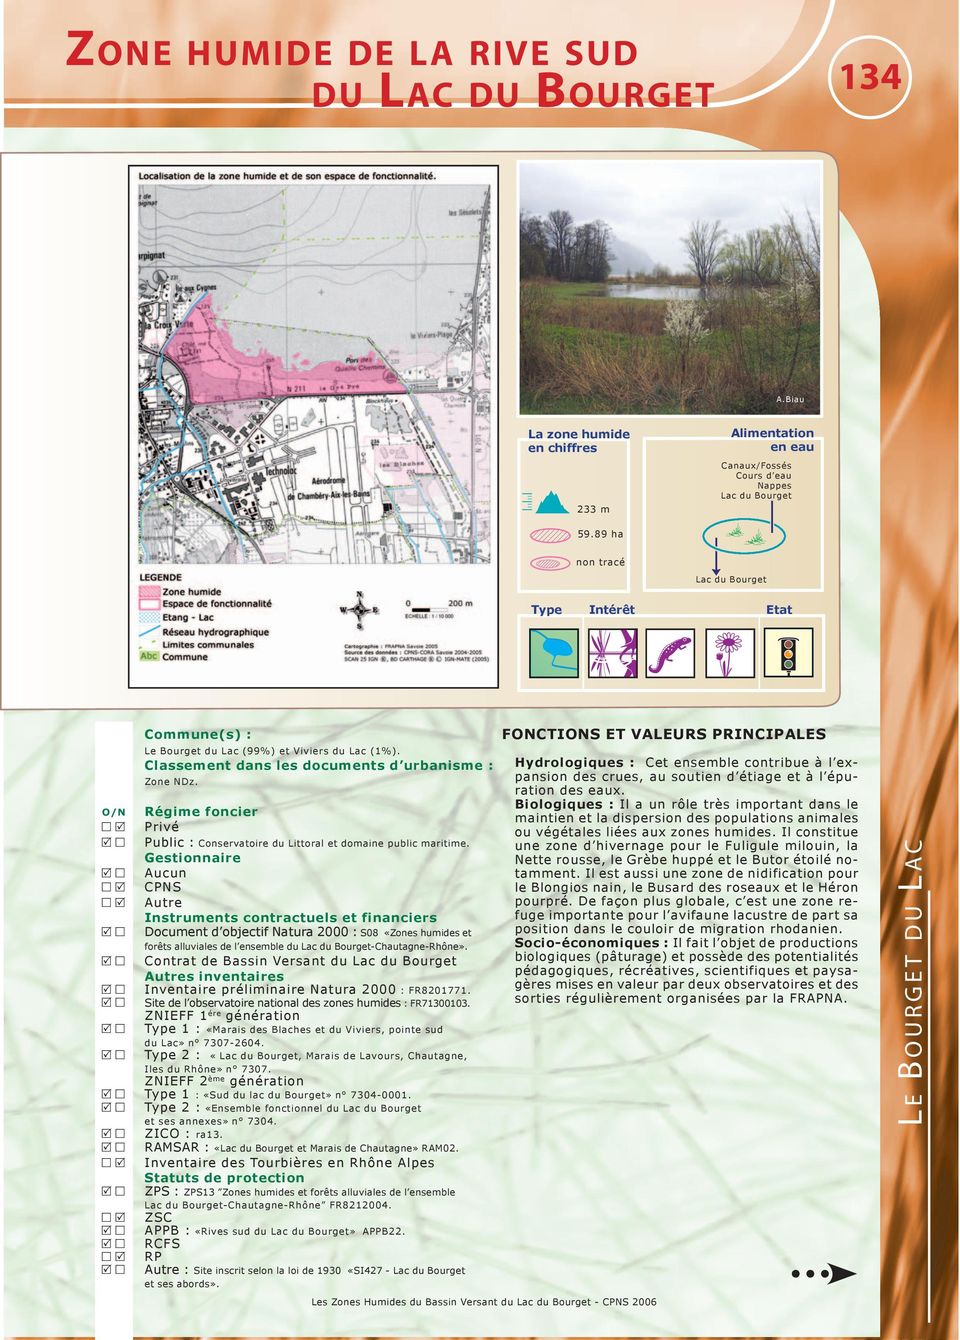 Aucun CPNS Autre Document d objectif Natura 2000 : S08 «Zones humides et forêts alluviales de l ensemble du Lac du Bourget-Chautagne-Rhône».